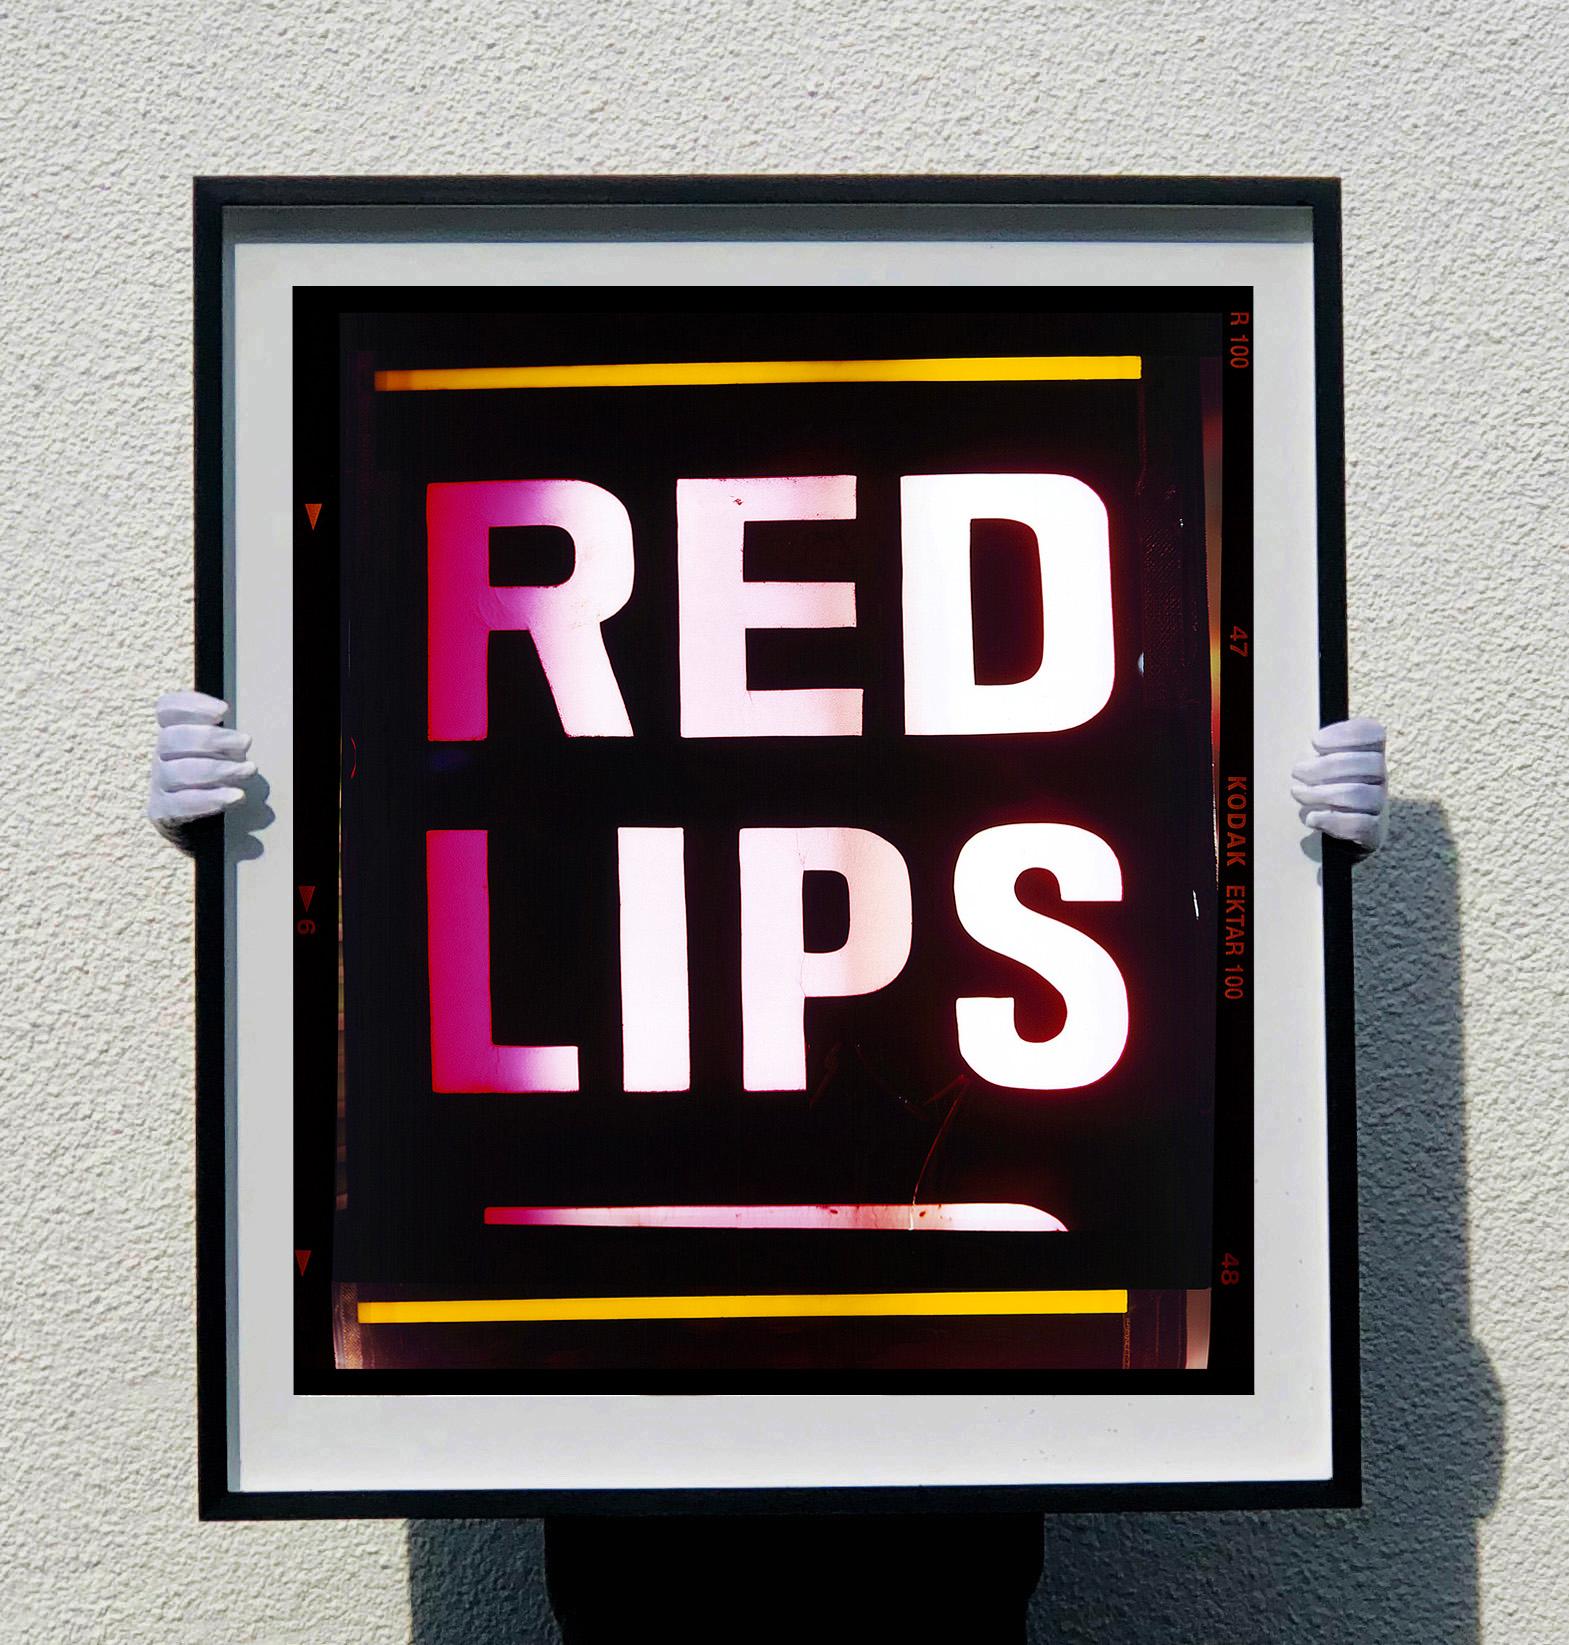 Lèvres rouges, qui fait partie de la série Hong Kong 2016 de Richard, cette œuvre d'art capture l'essence de Kowloon. La typographie audacieuse fait un pop art original et cool.

Cette œuvre d'art est une édition limitée à 25 exemplaires, tirage